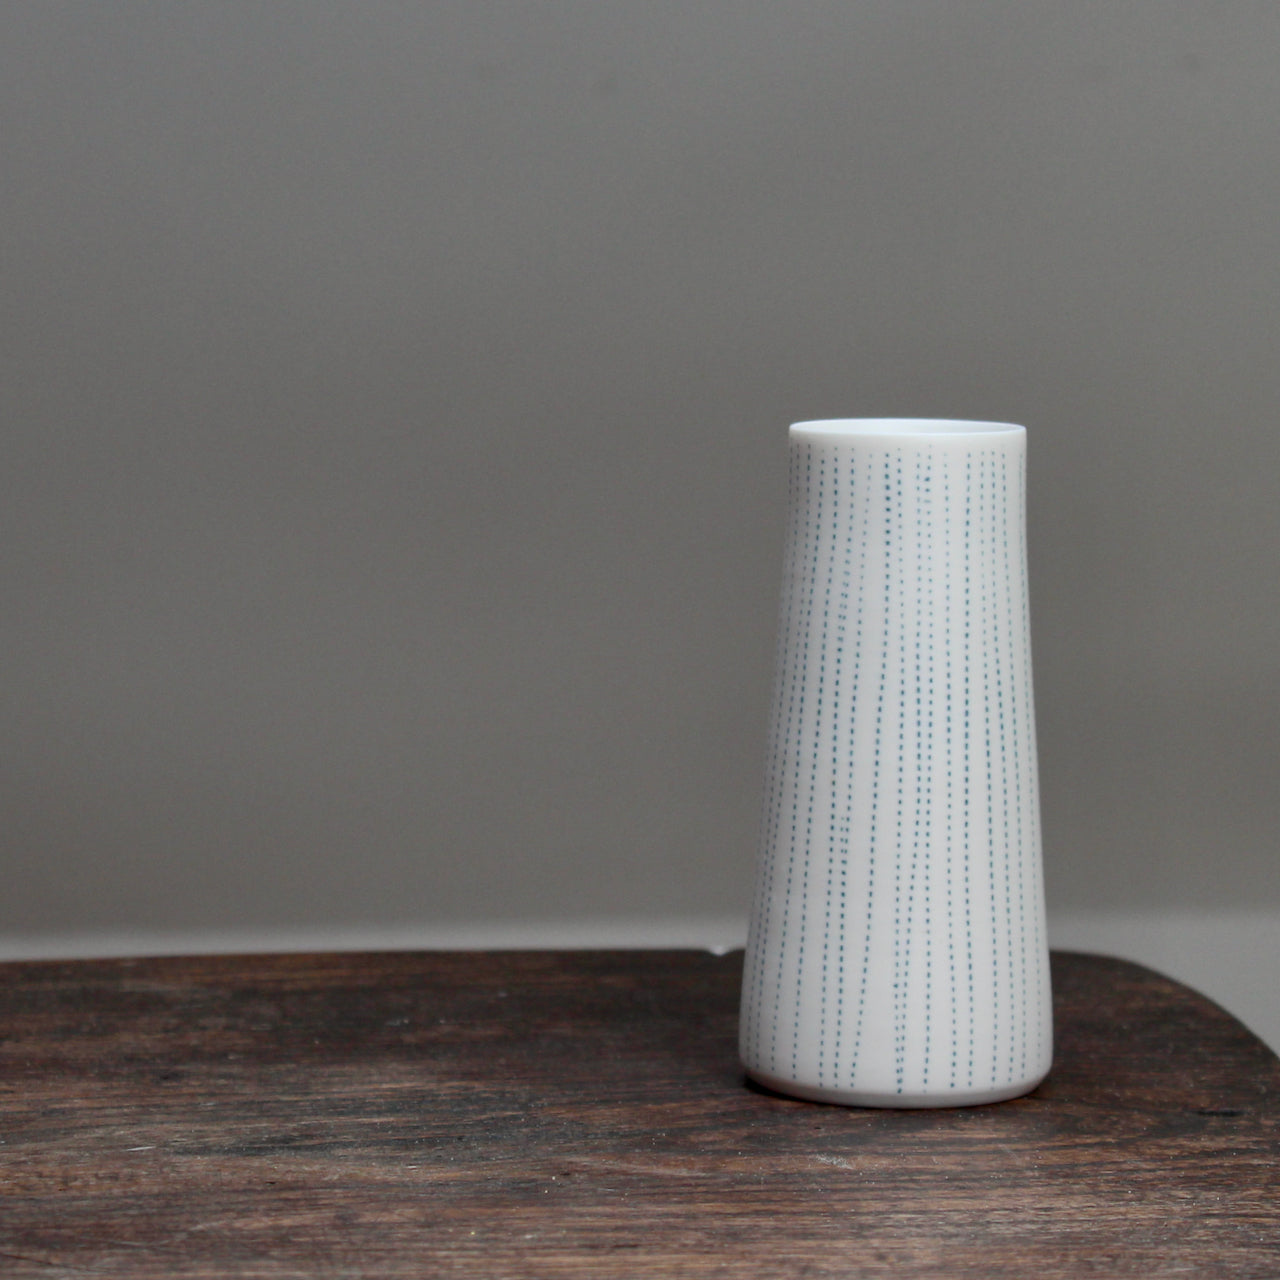 porcelain stem vase with blue vertical lines on a table